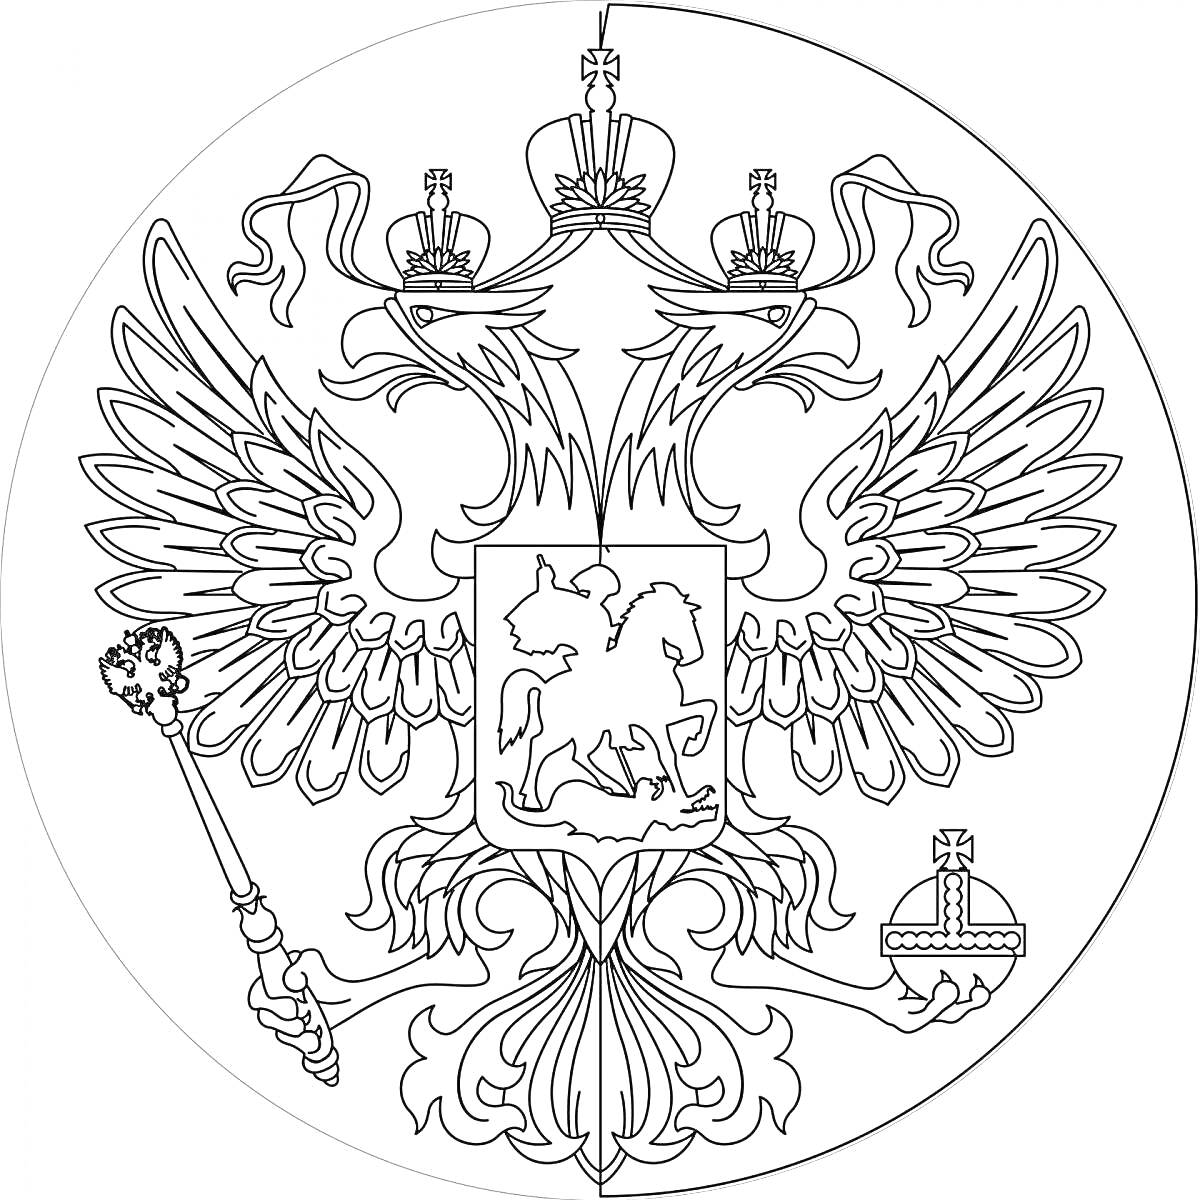 Герб России с двуглавым орлом, держащим скипетр и державу, с изображением Святого Георгия Победоносца на щите, увенчанного тремя коронами и лентами.